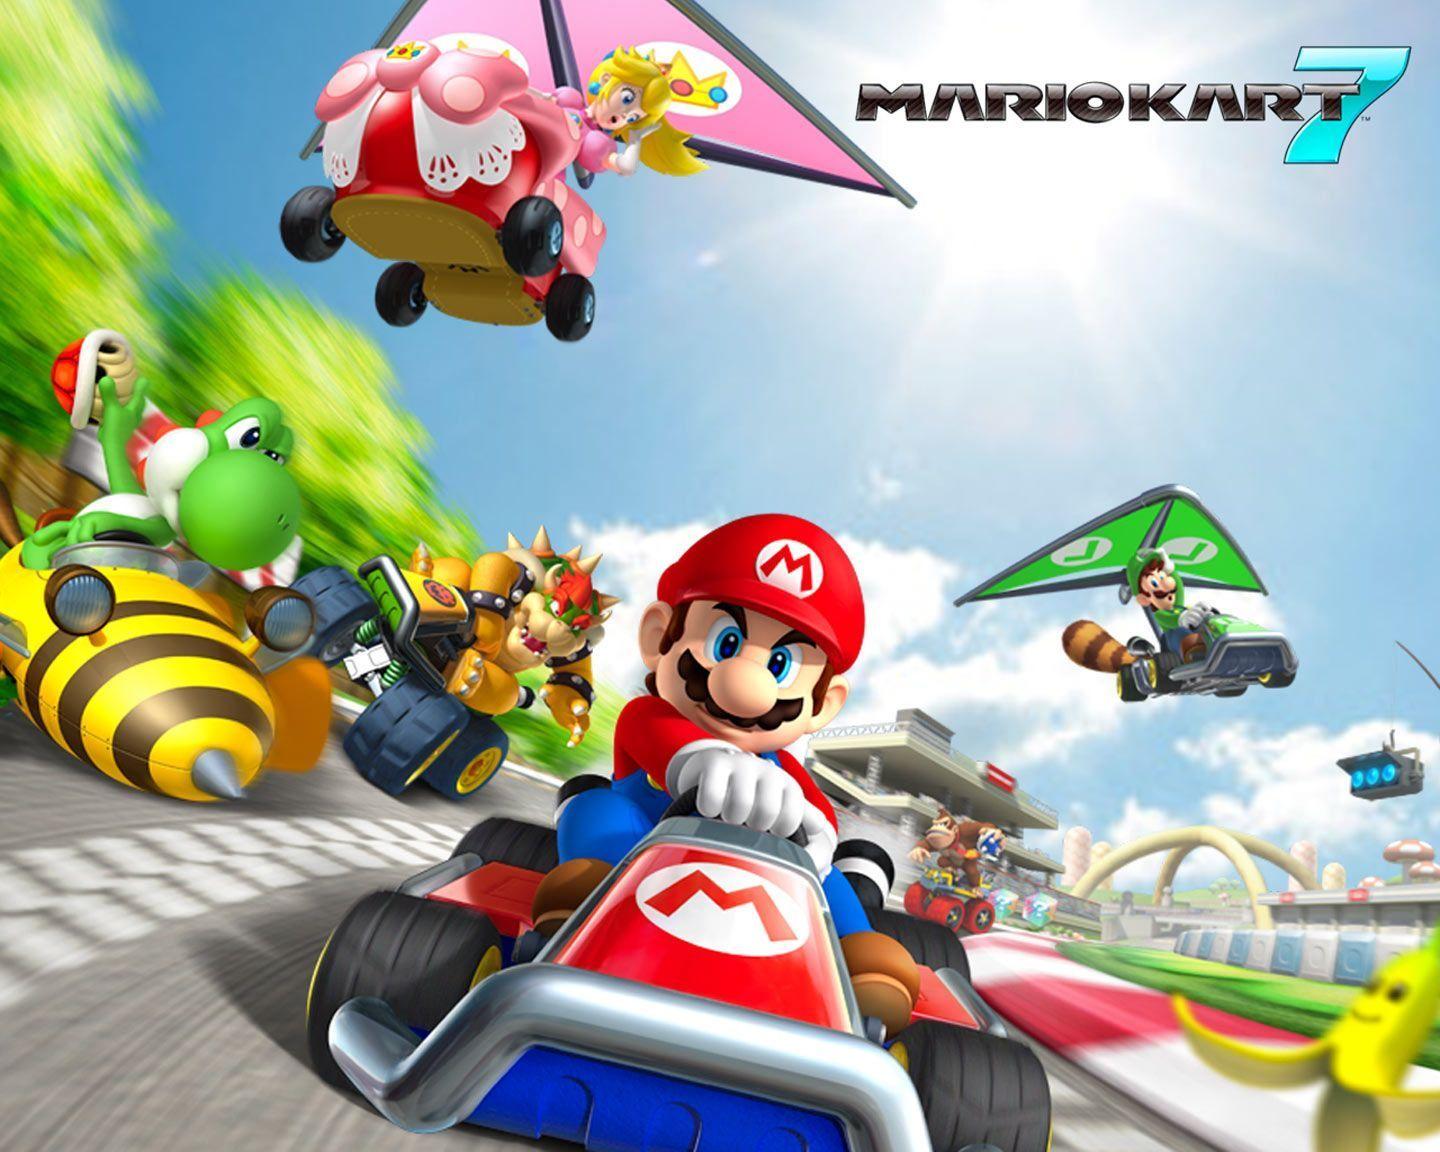 Fonds d&;écran Mario Kart, tous les wallpaper Mario Kart